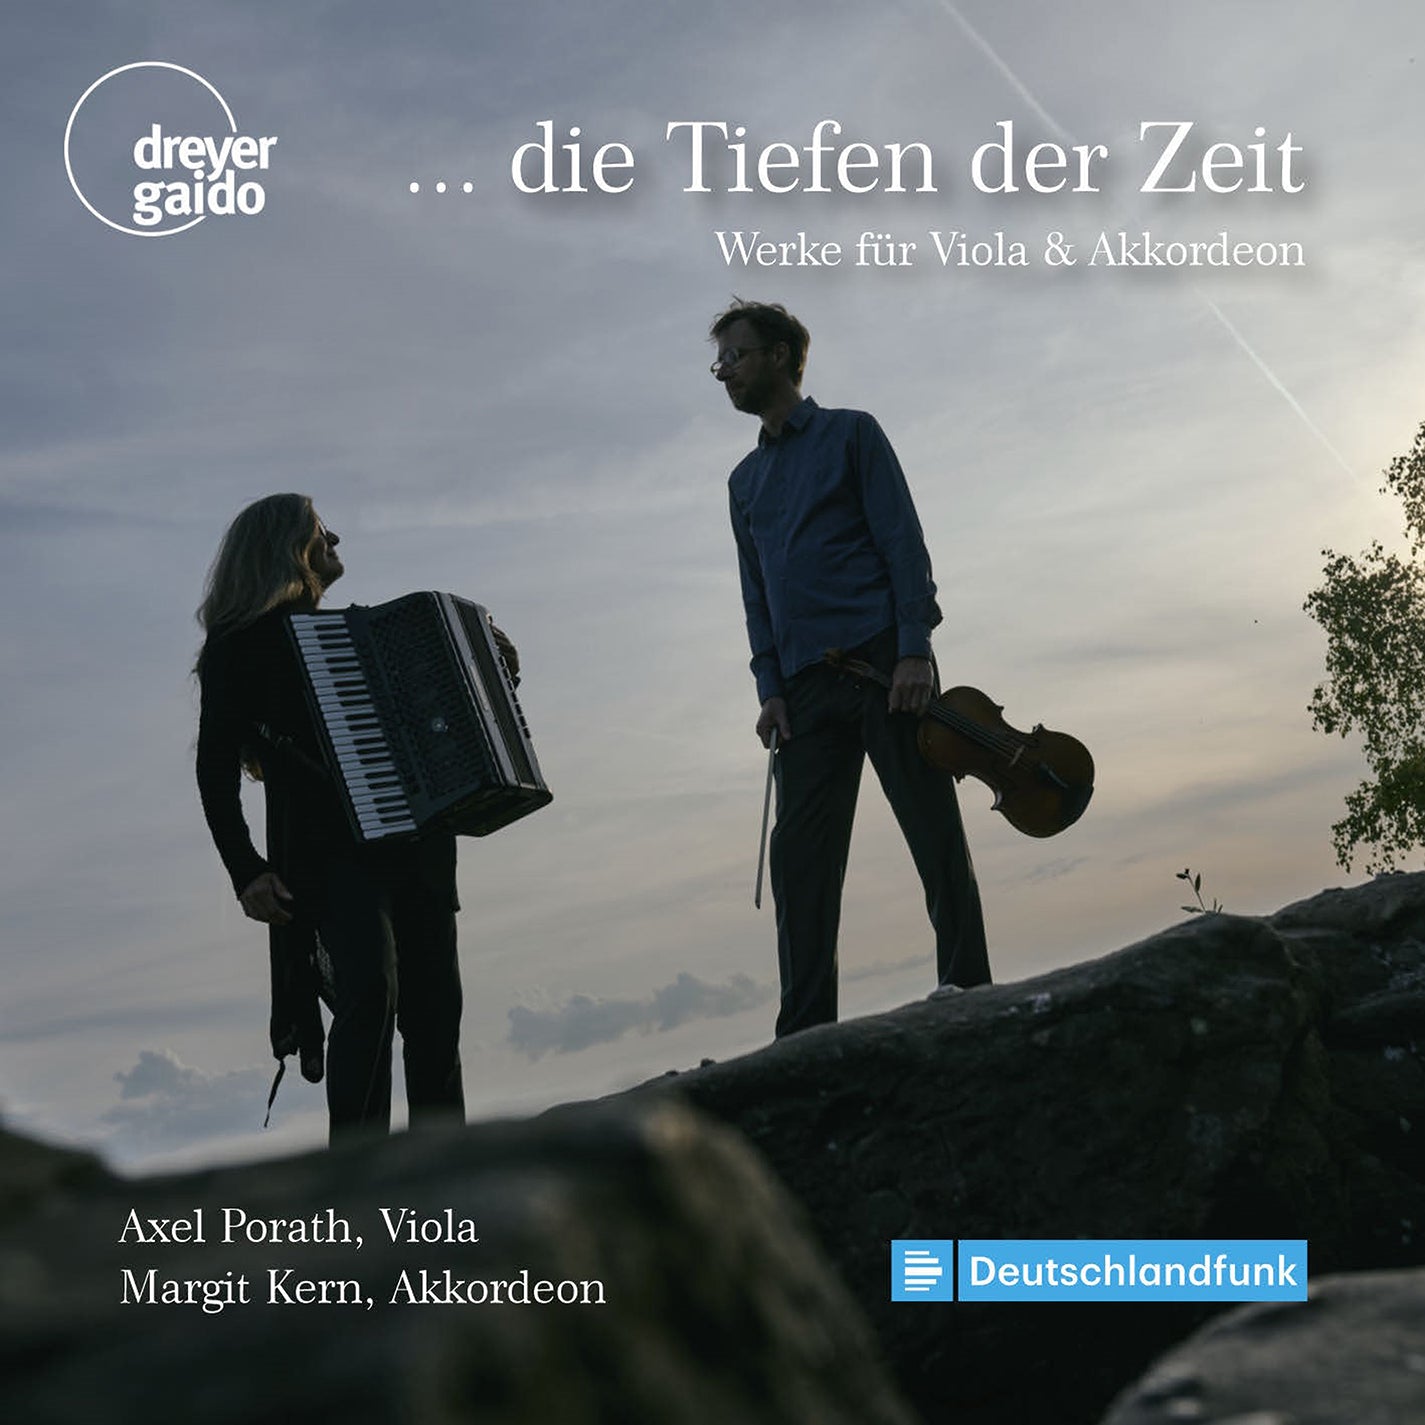 ... die Tiefen der Zeit - Works for Violin & Accordion